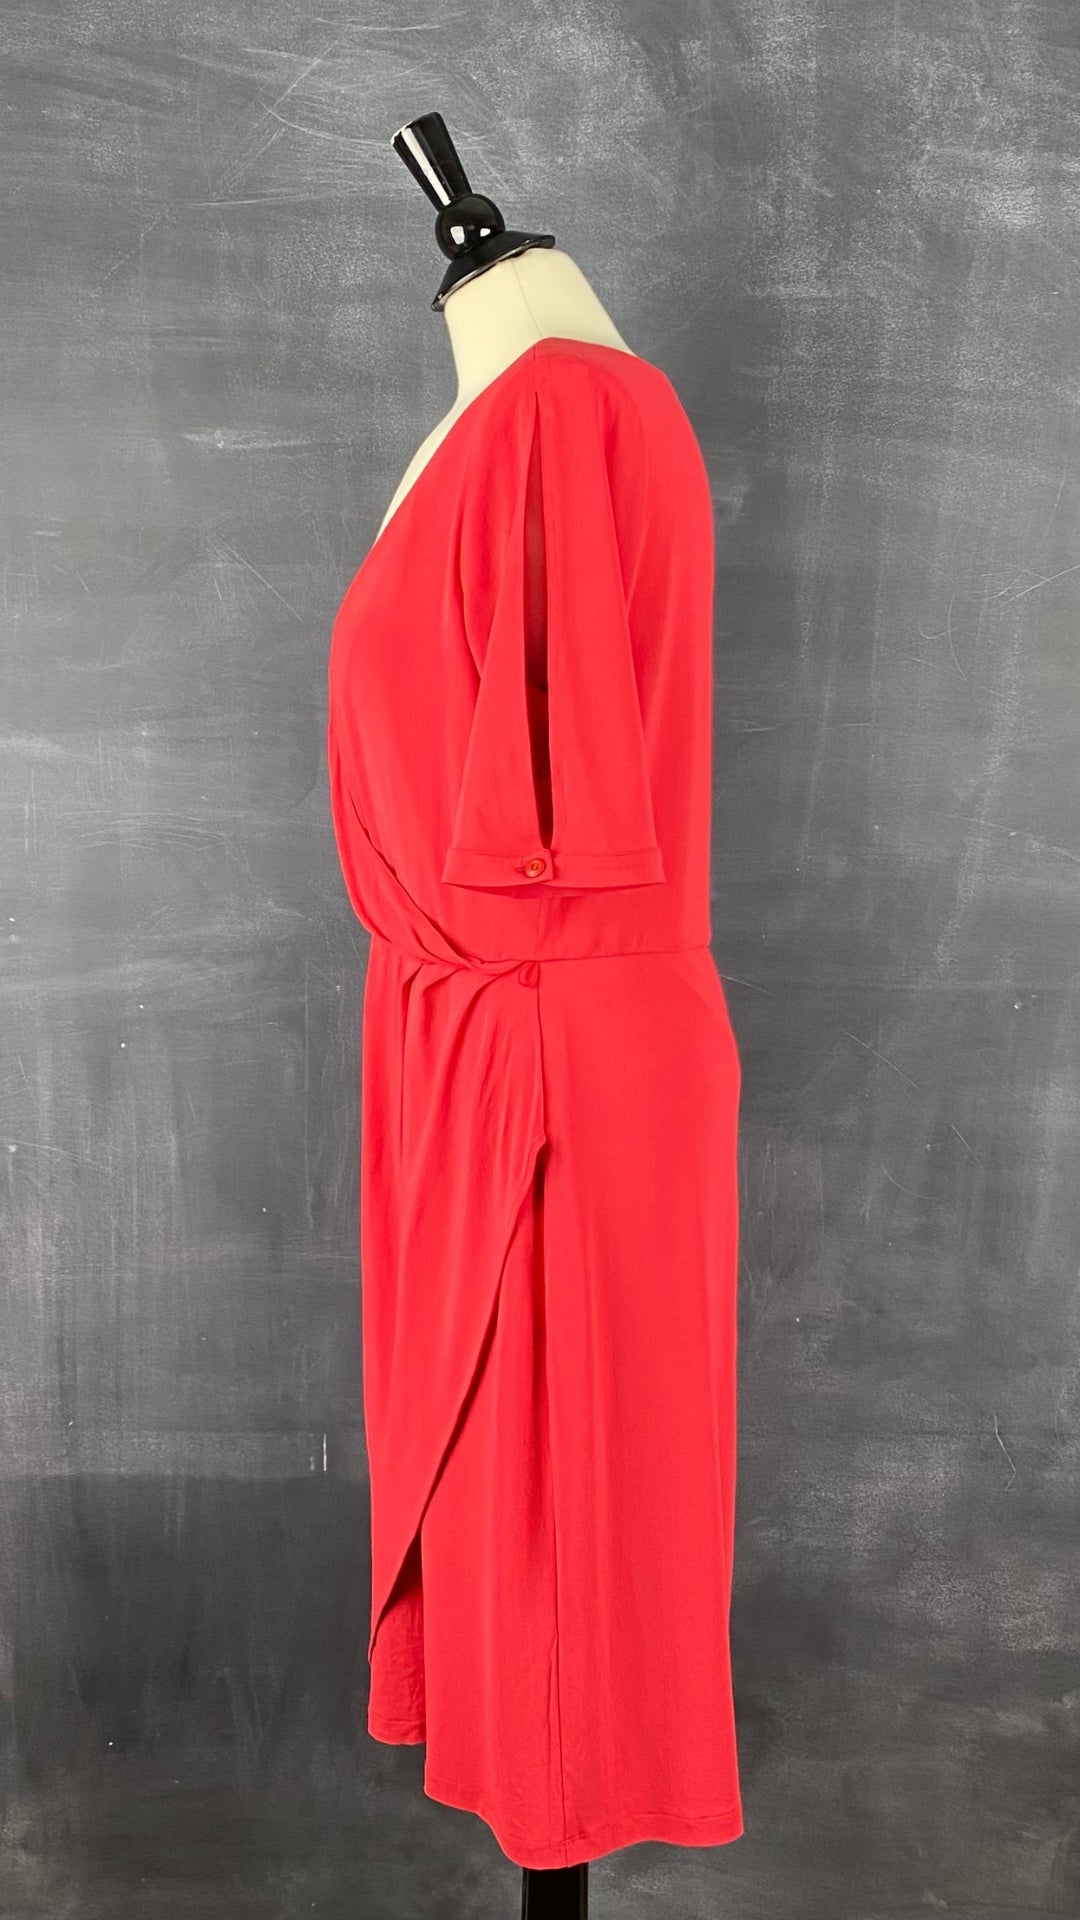 Robe rouge extensible de style portefeuille de la marque québécoise Iris Setlakwe. Magnifique coupe et superbe robe classique. Vue de côté.